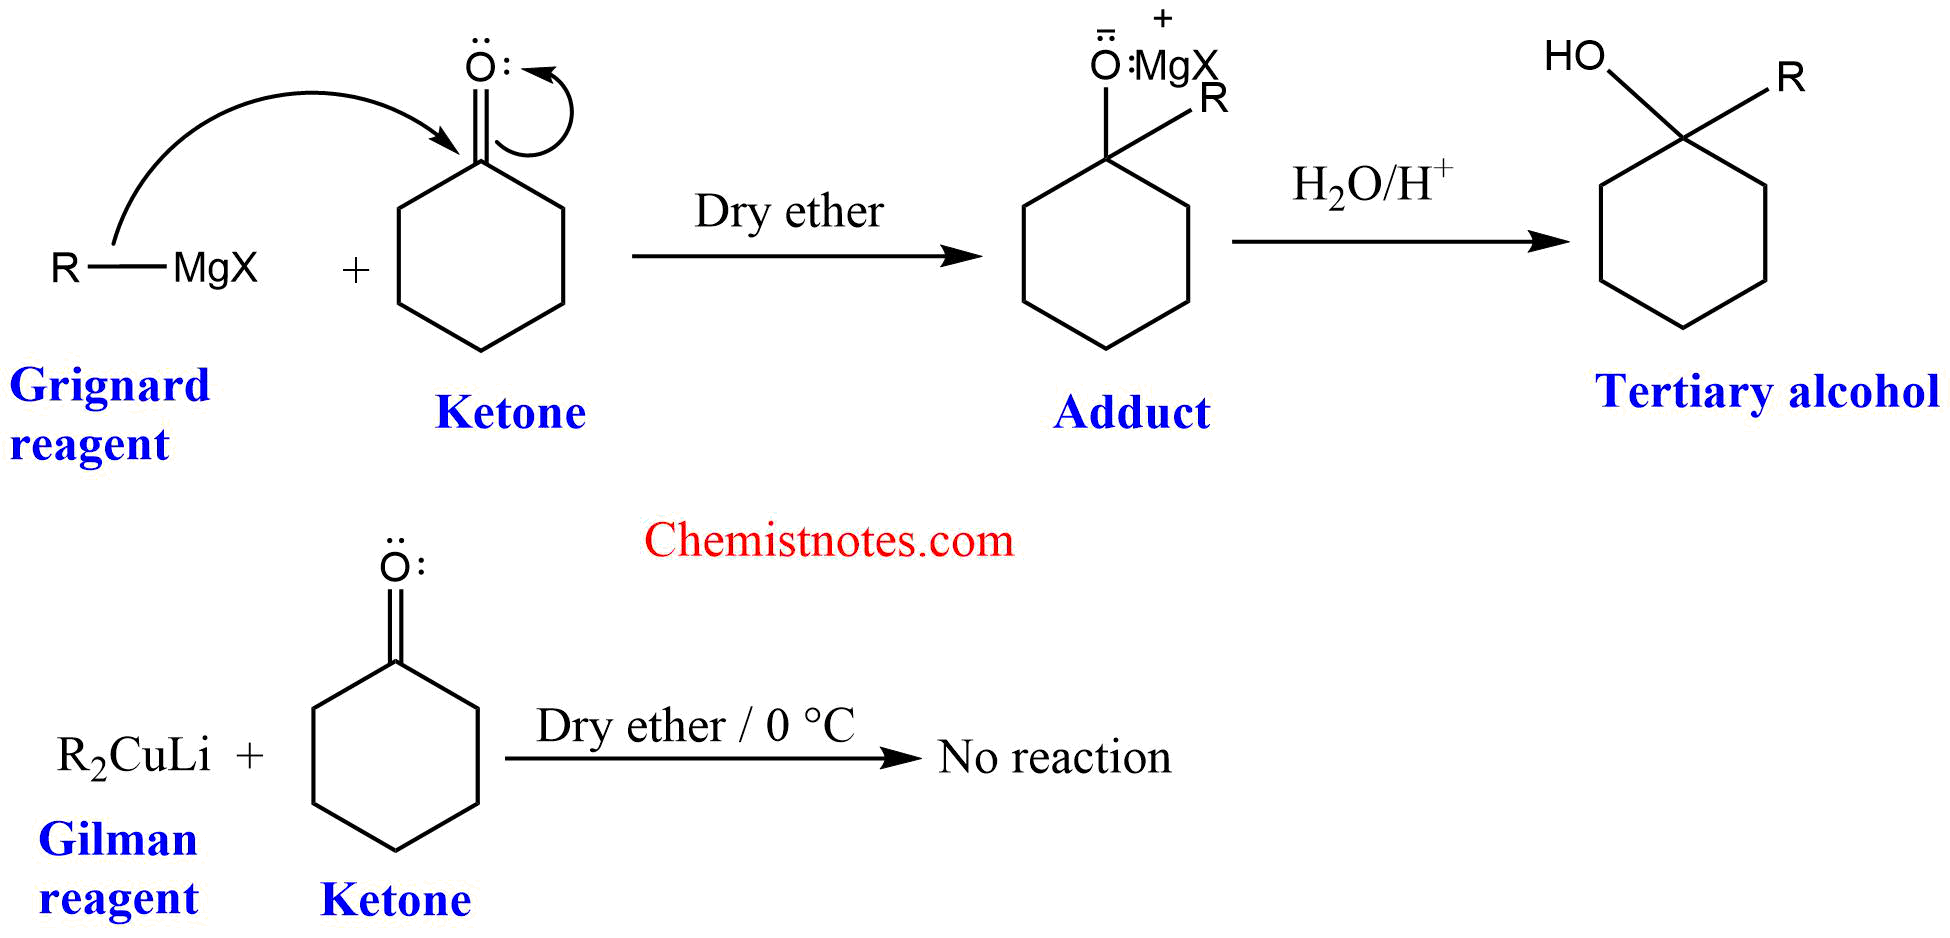 Gilman reagent versus Grignard reagent